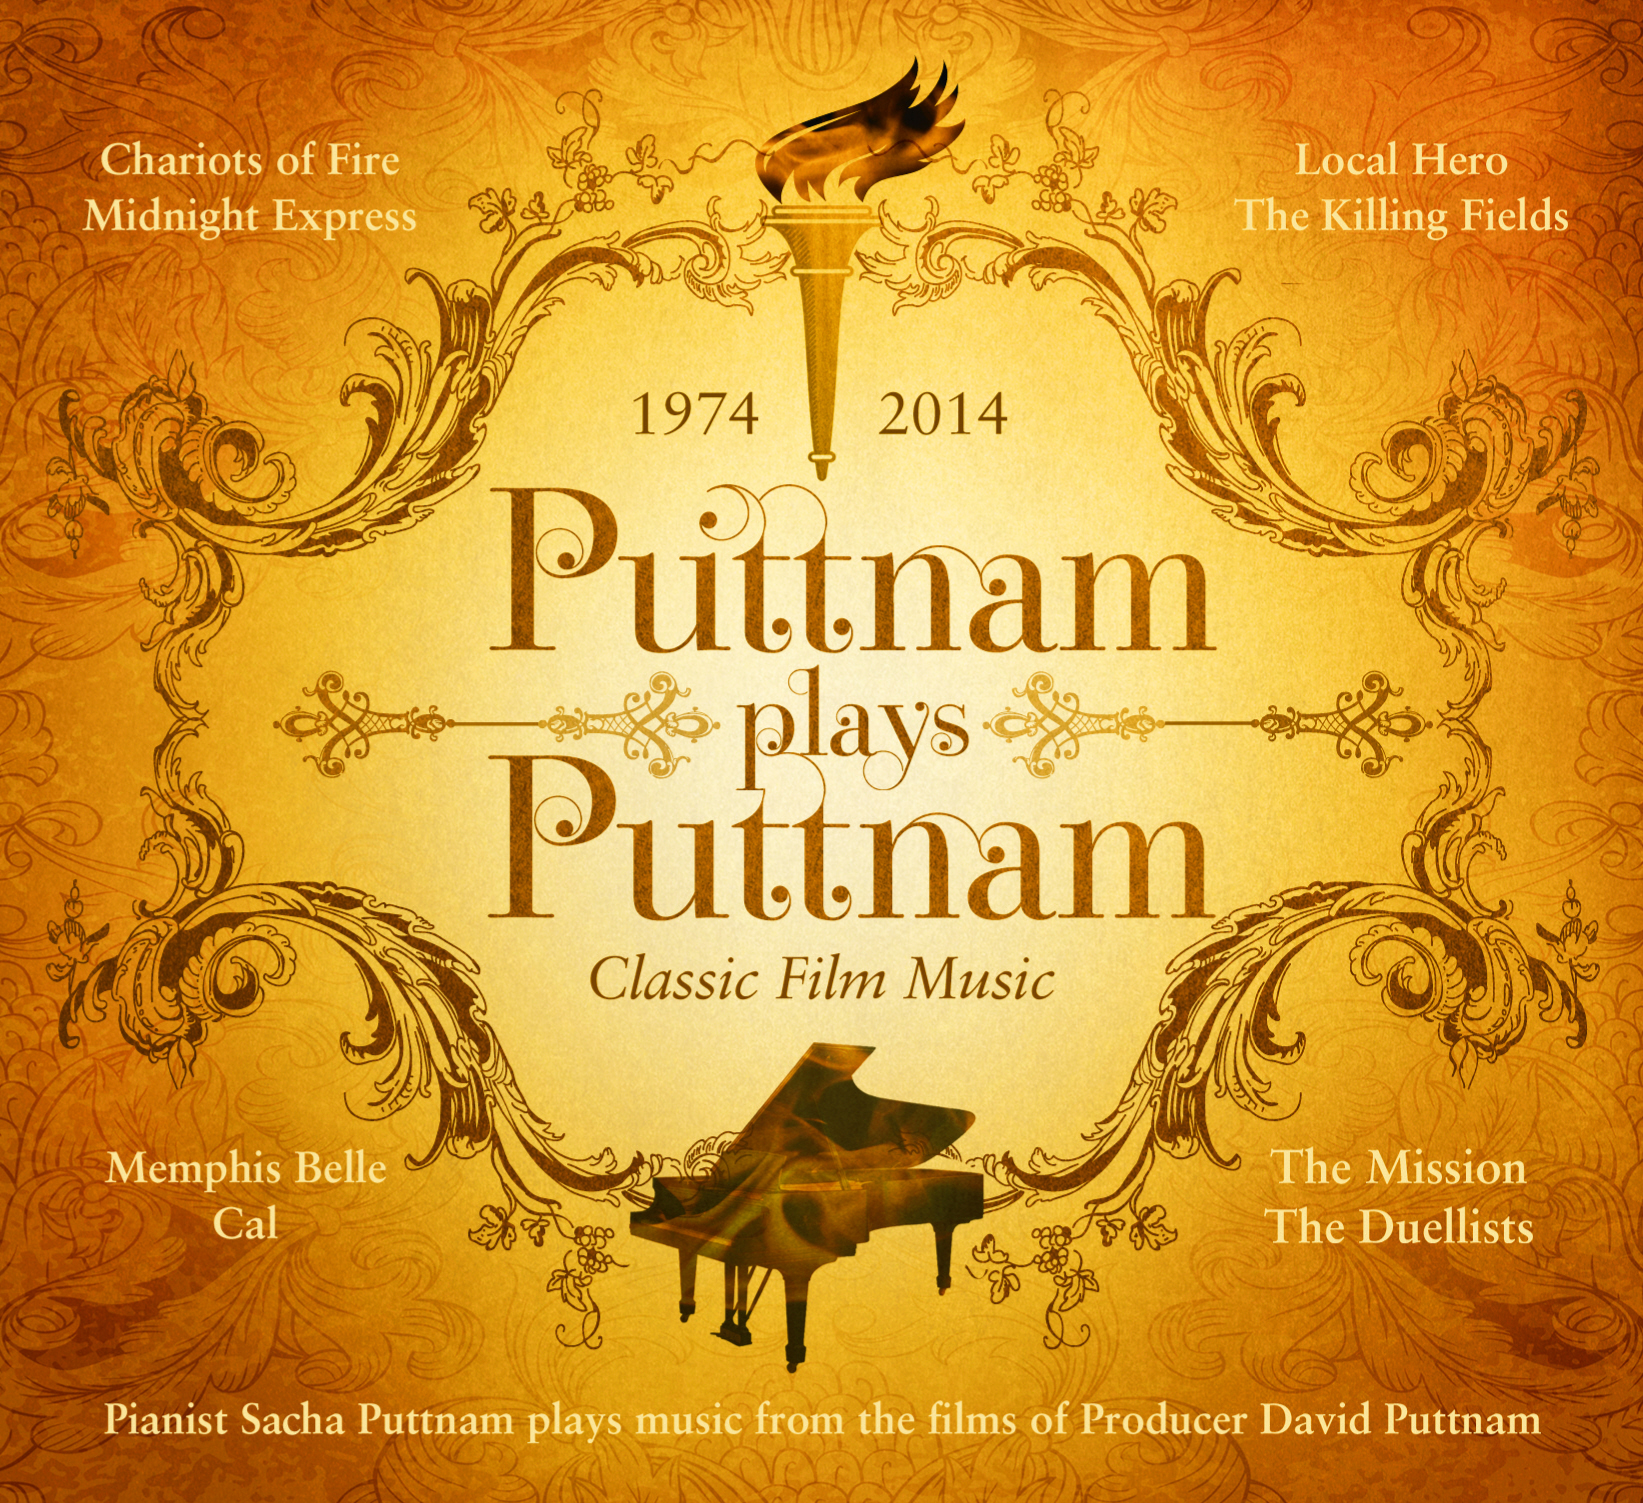 Puttnam plays Puttnam - Top Five Classic Film Music Album - 2014